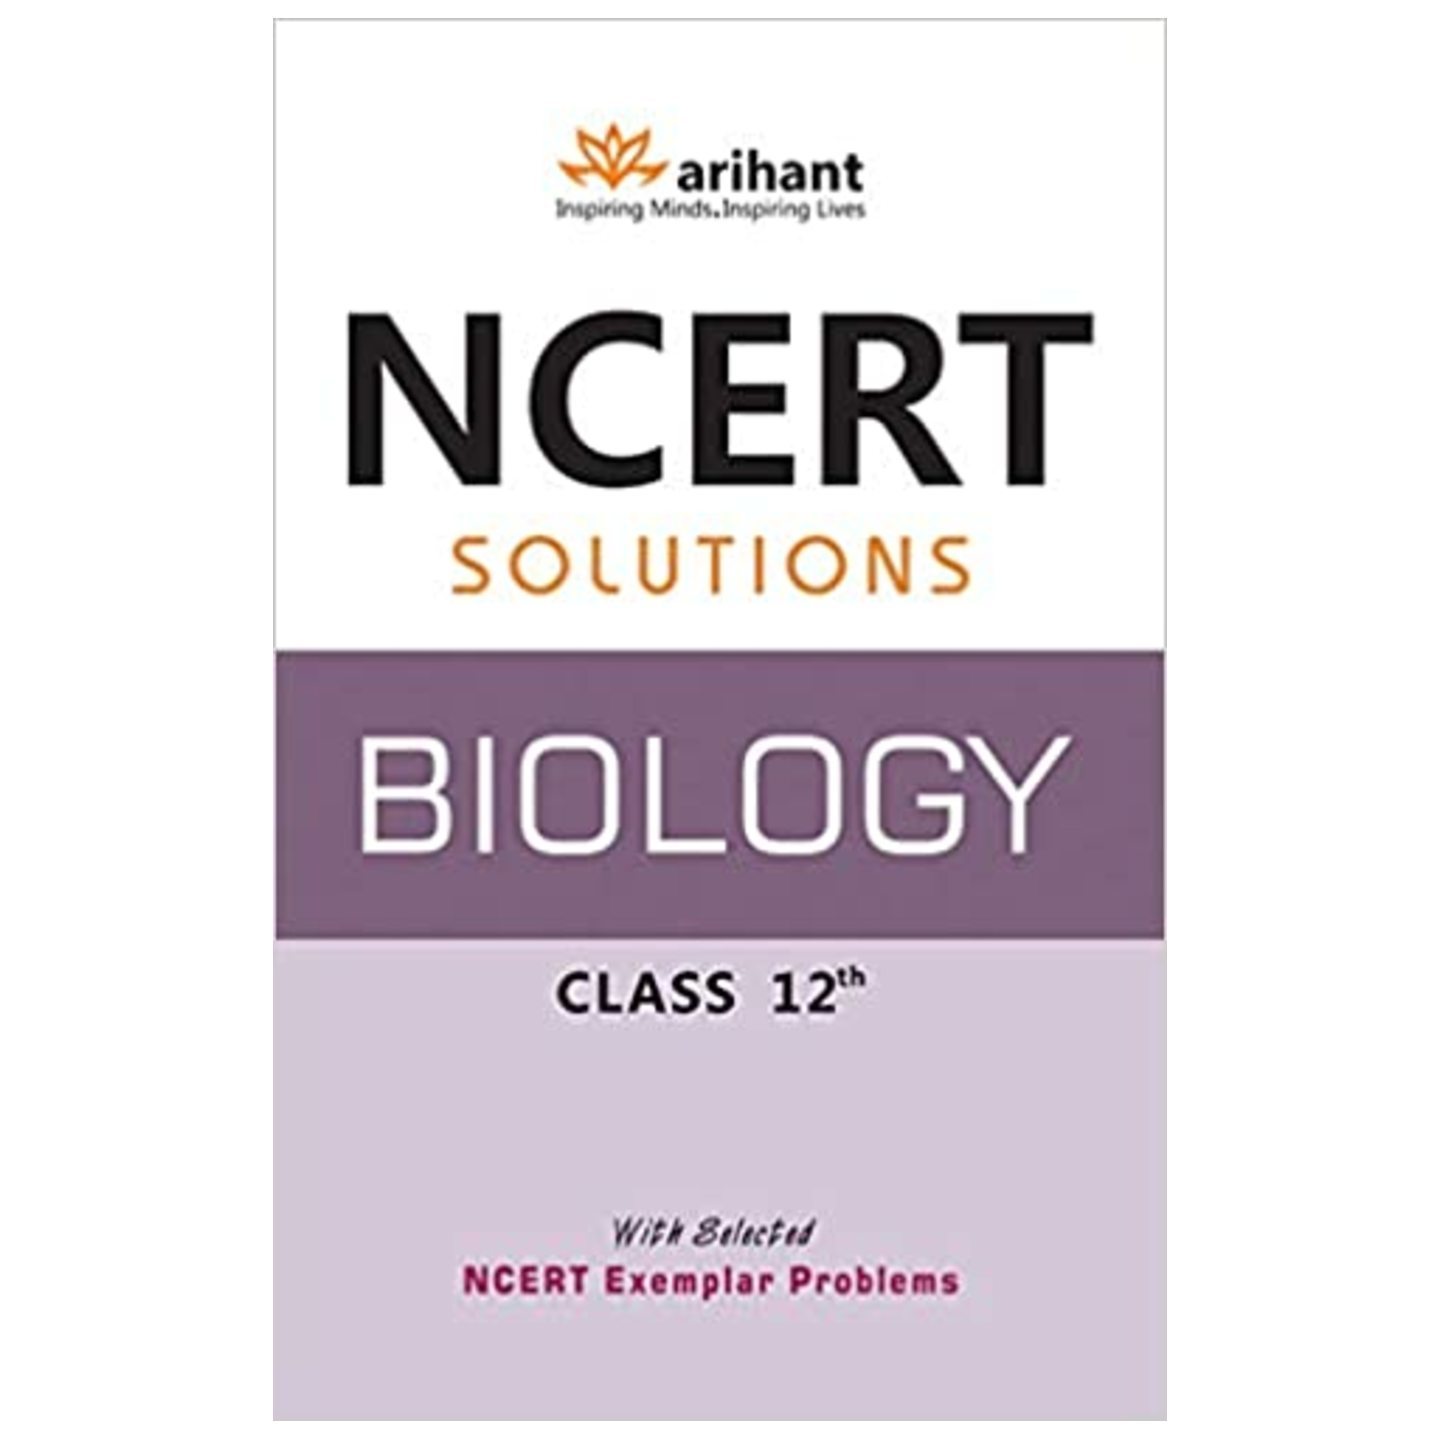 NCERT Solutions - Biology for Class 12th ARIHANT